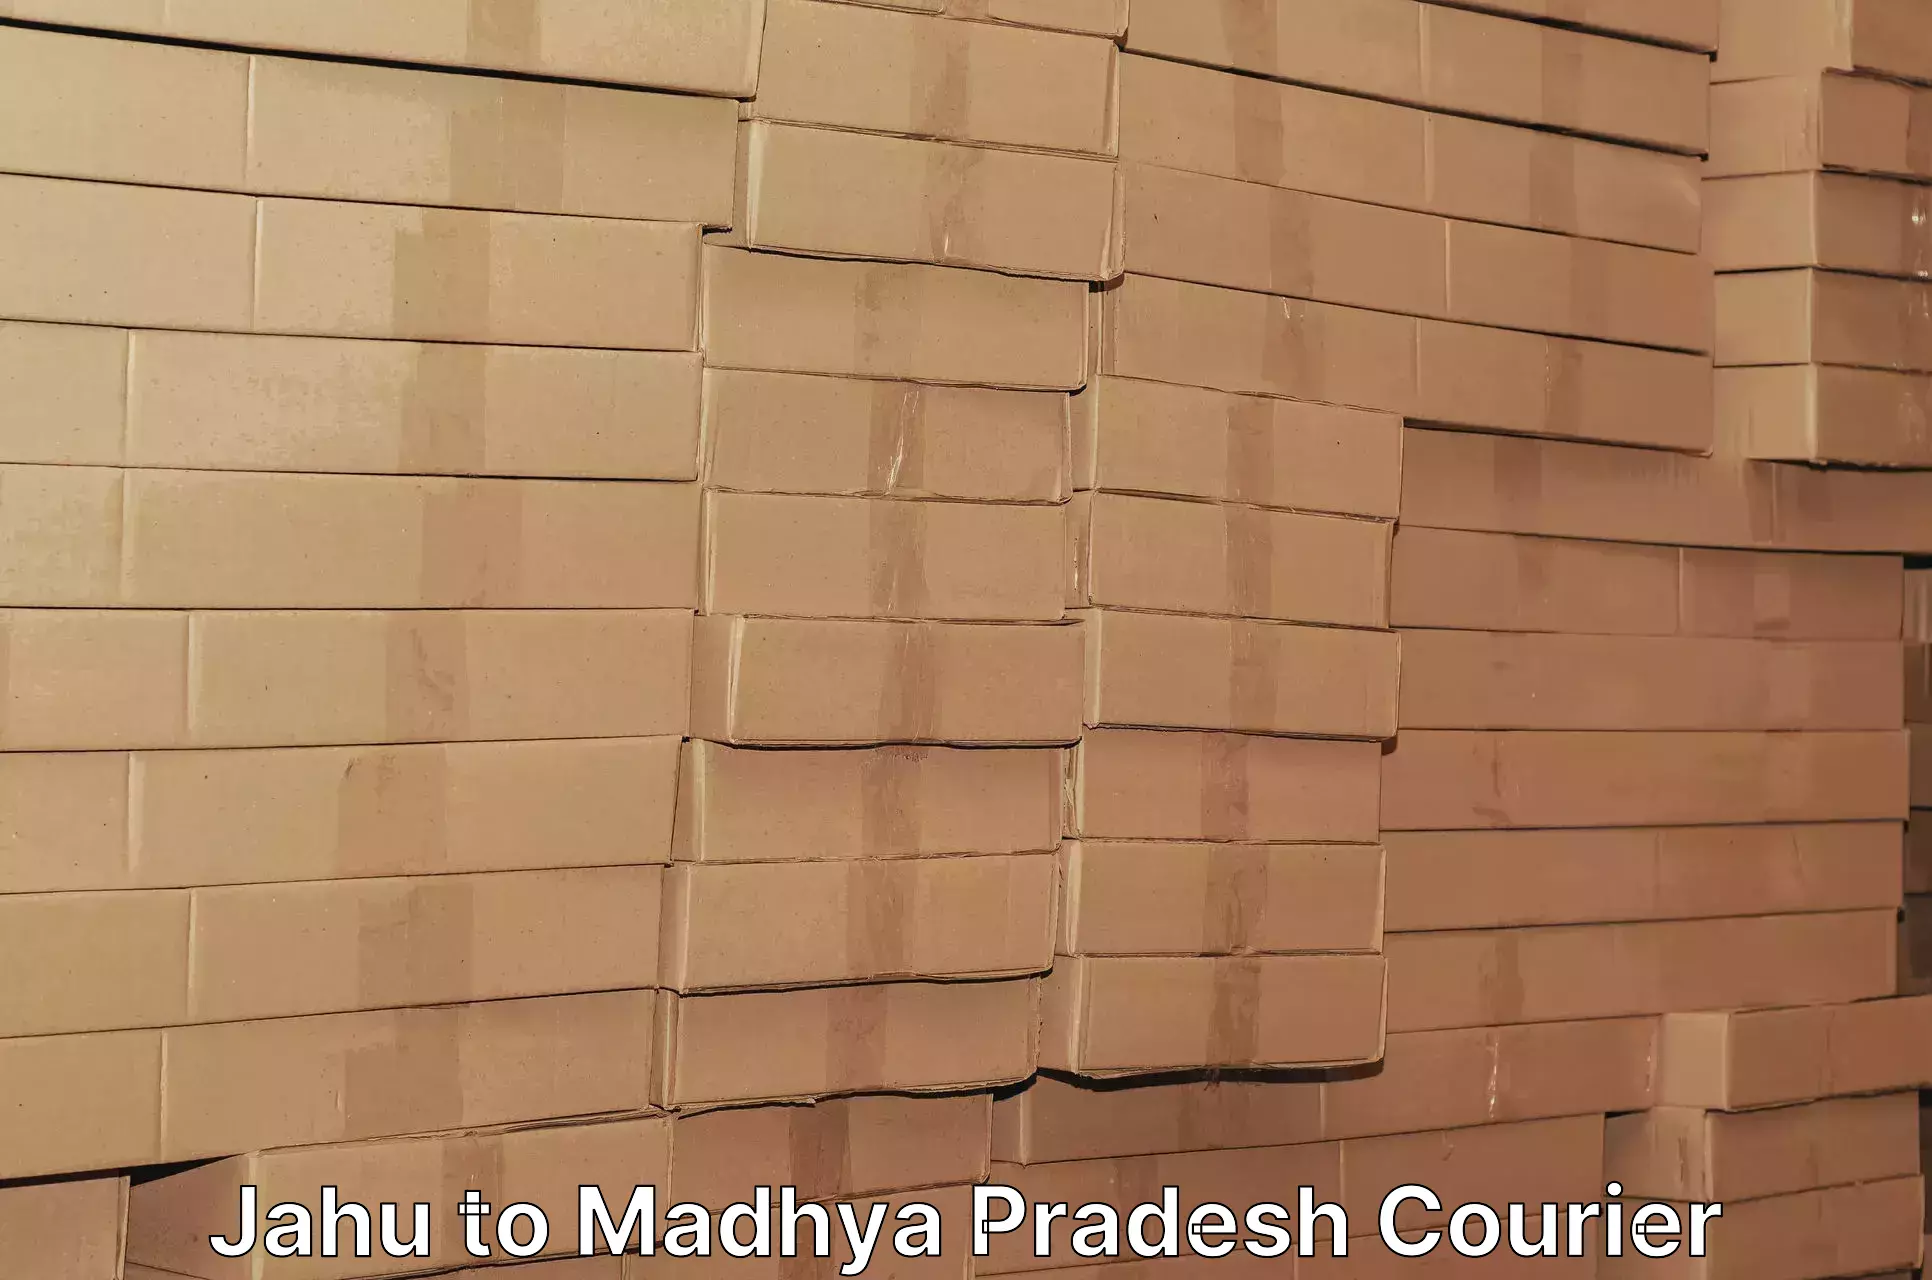 Bulk courier orders Jahu to Madhya Pradesh